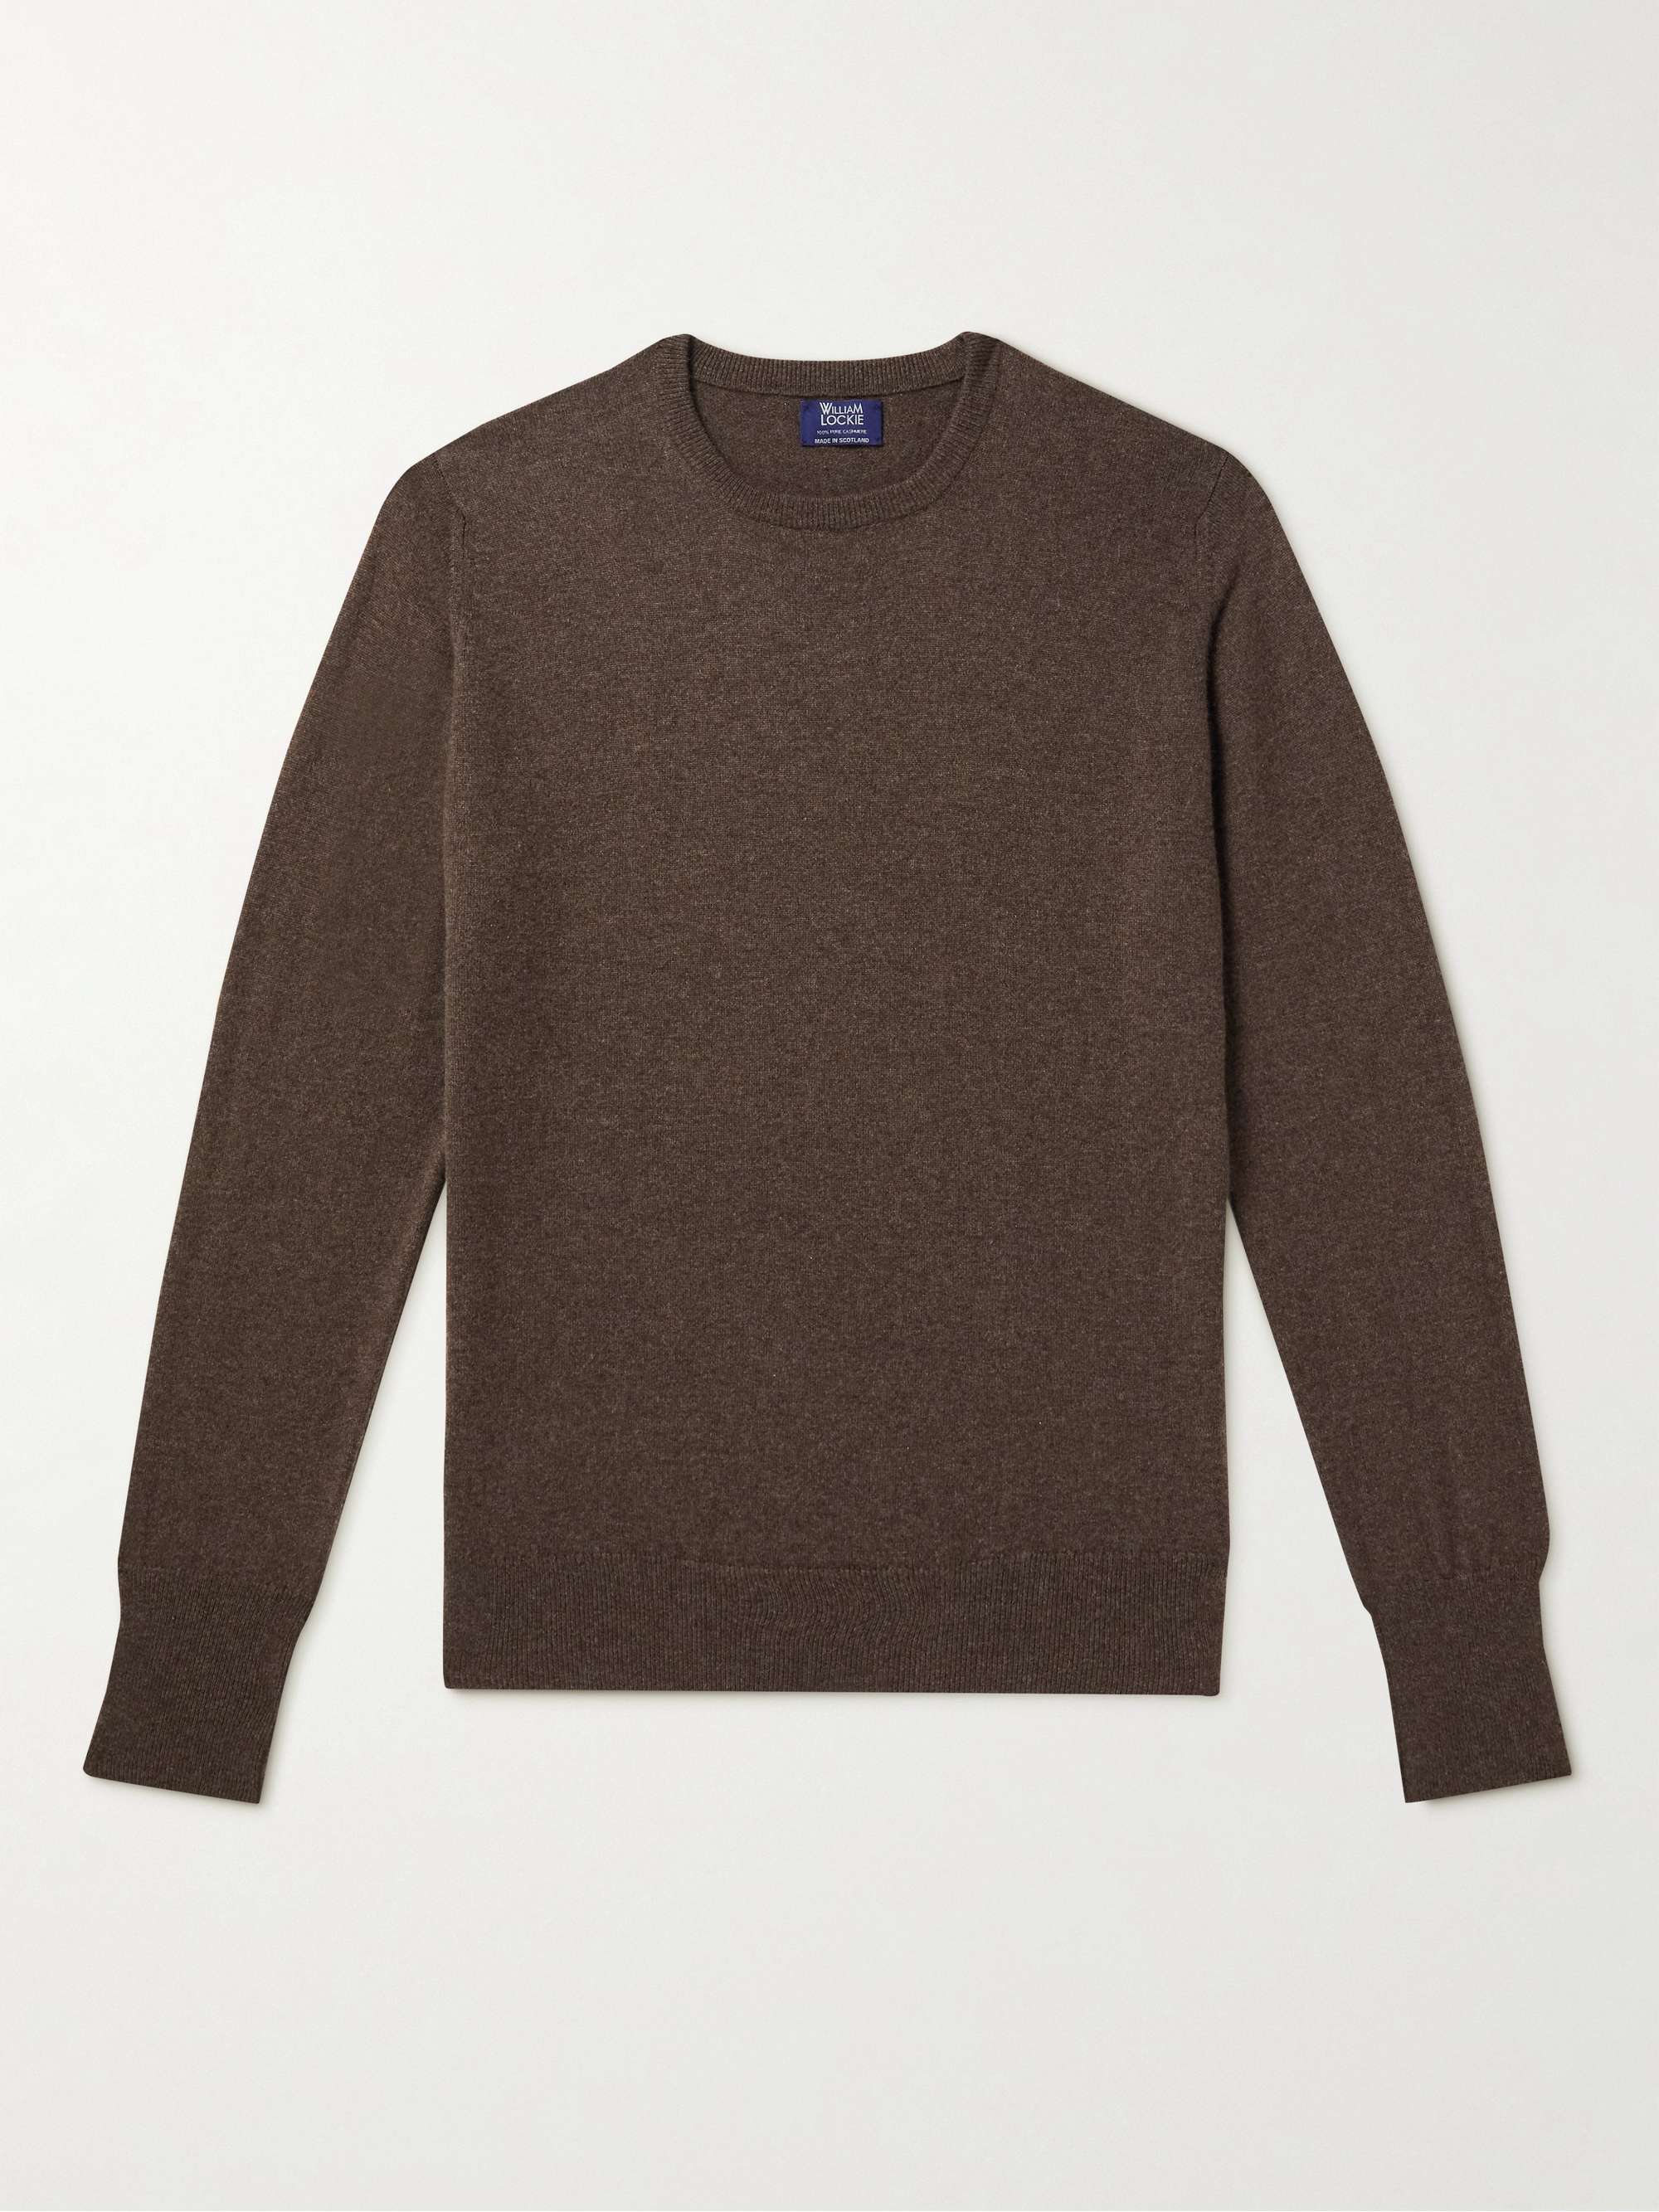 WILLIAM LOCKIE Oxton Cashmere Sweater | MR PORTER